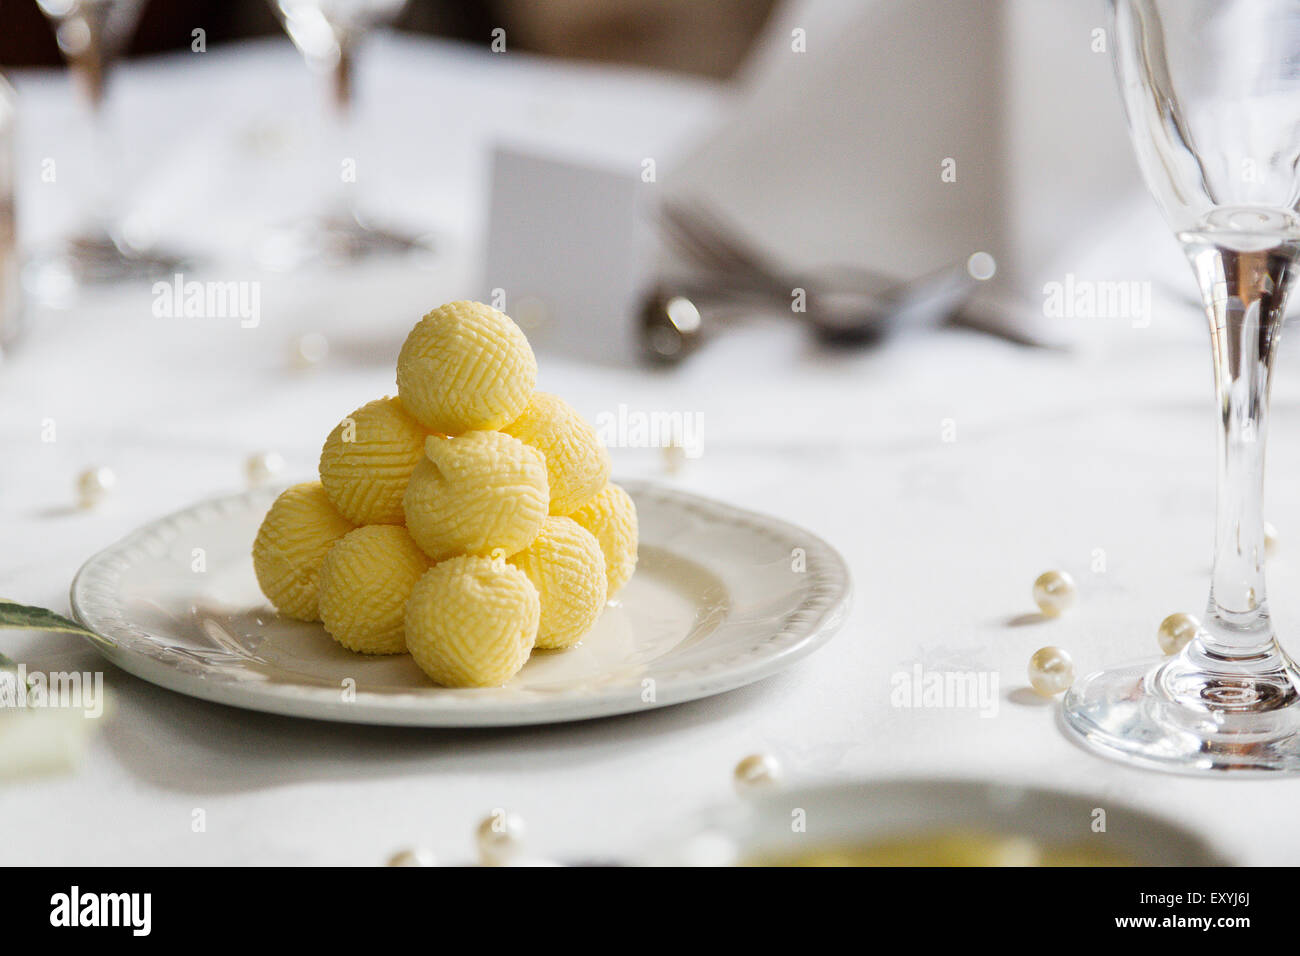 Una piramide di giallo palline di burro e presentati su un tavolo addobbato impostato per un banchetto. Le sfere sono servite su piastre laterali per essere utilizzato con panini freschi Foto Stock